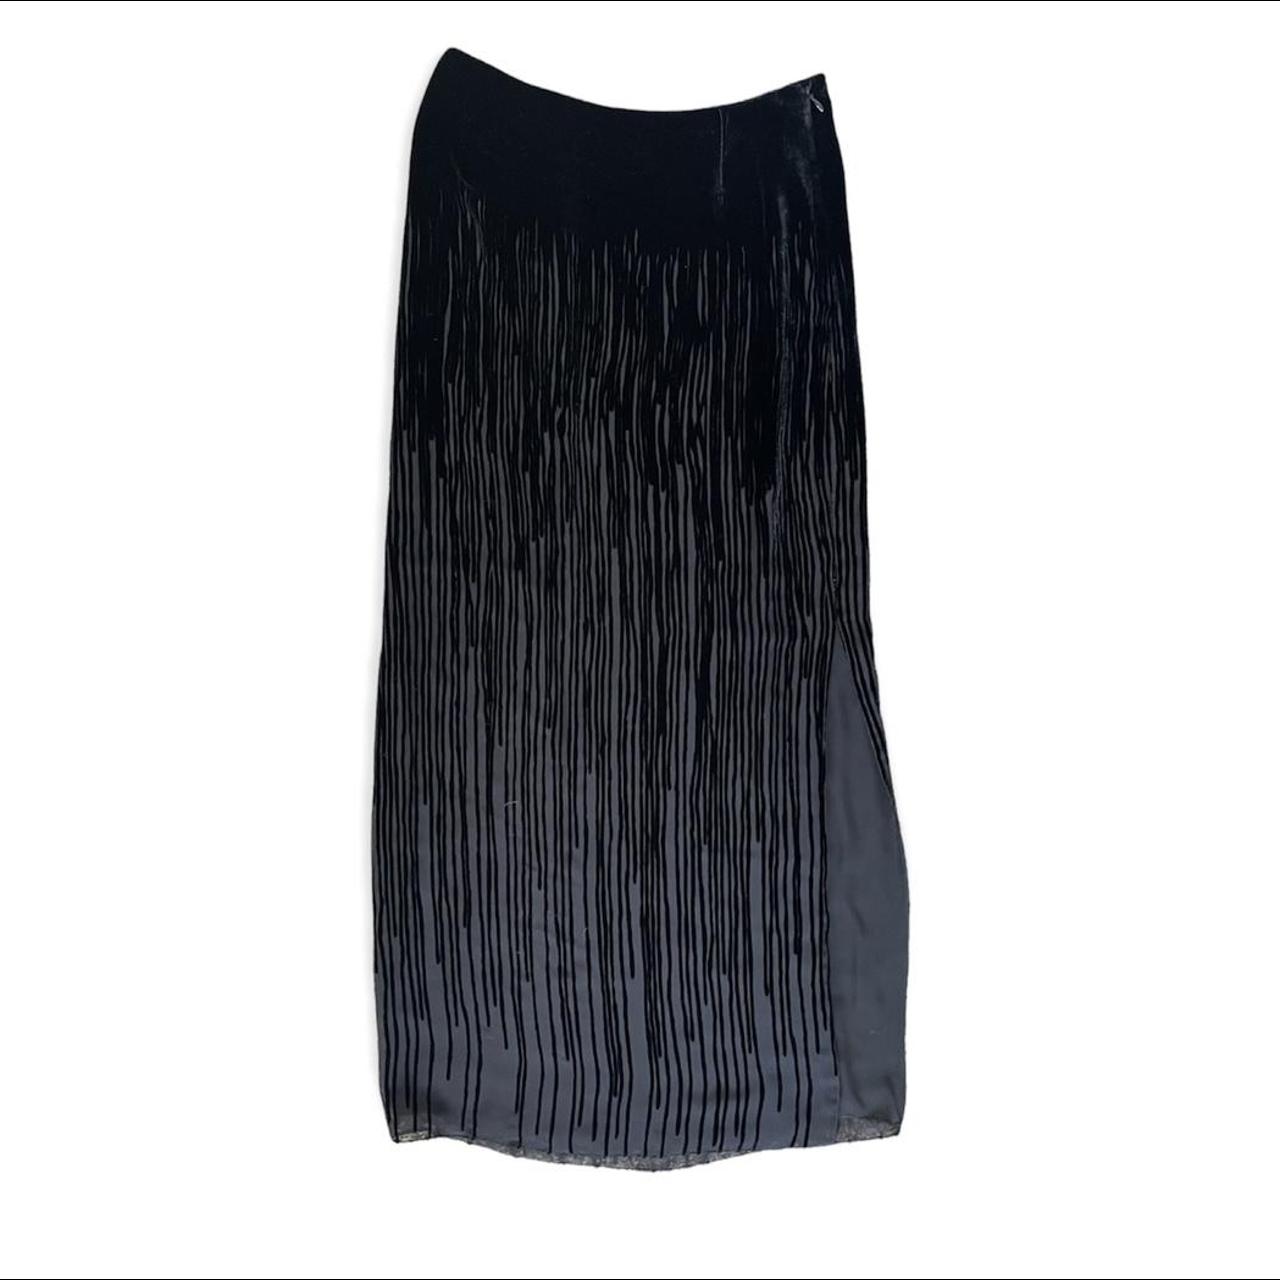 Grunge Velvet Mesh Skirt 🖤 The cutest velvet skirt... - Depop